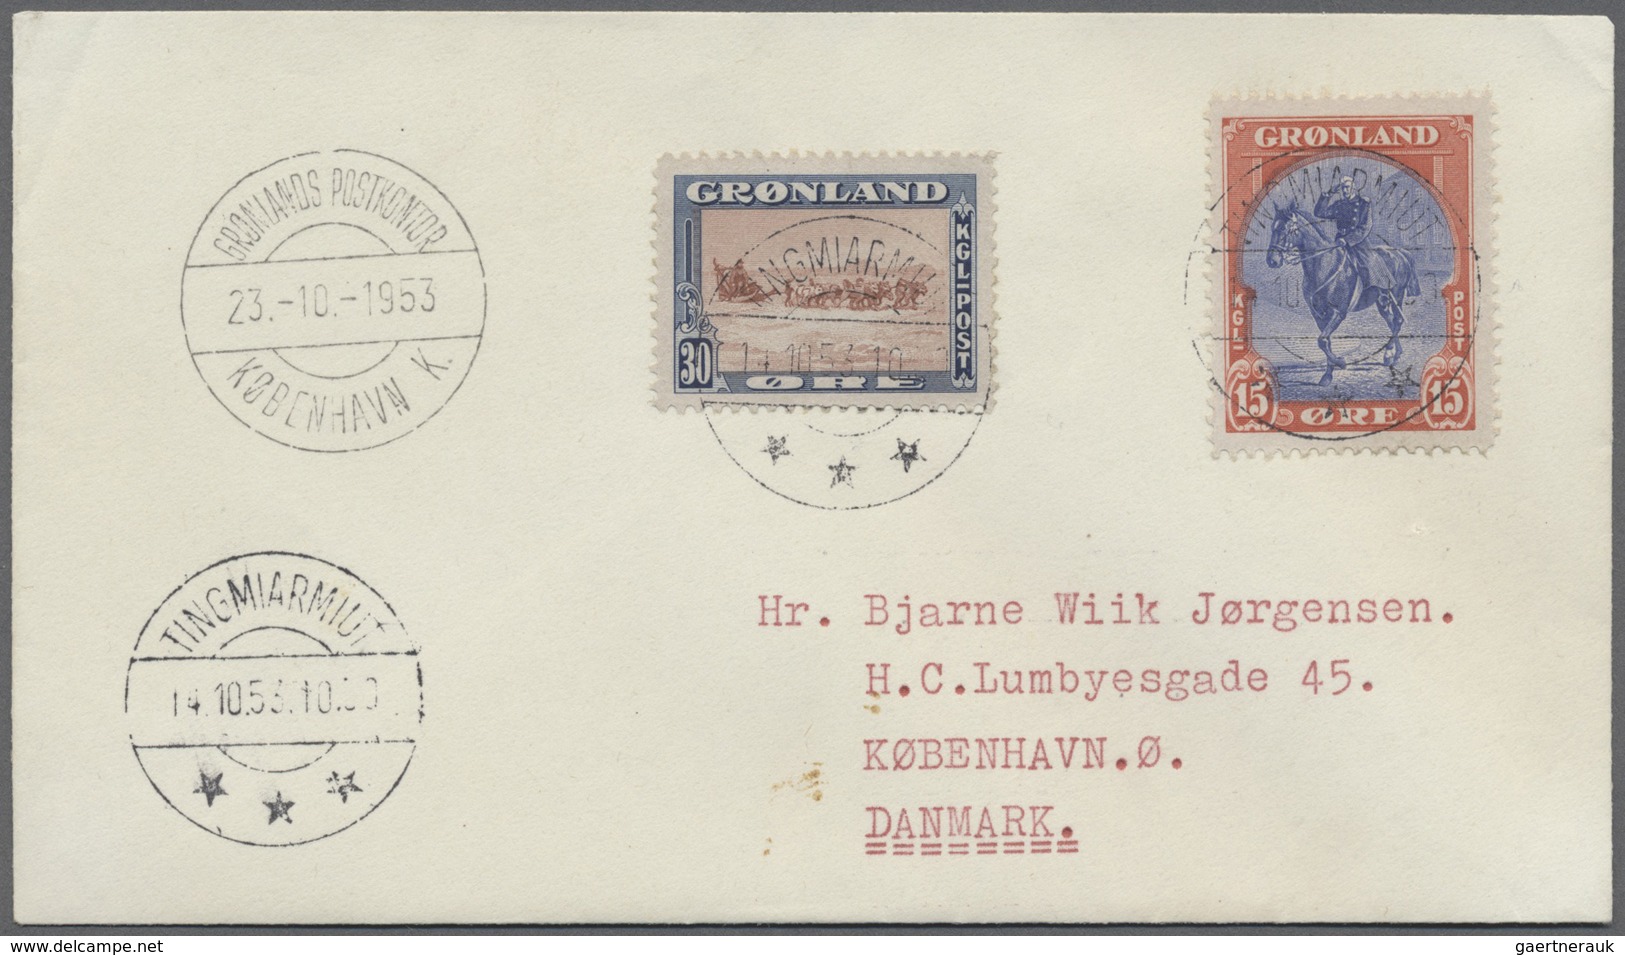 Br Dänemark - Grönland: 1953, Portogerechter Lp-Brief Von "Tingmiarmiut 14.10.53" Nach Kopenhagen, Ank. - Lettres & Documents